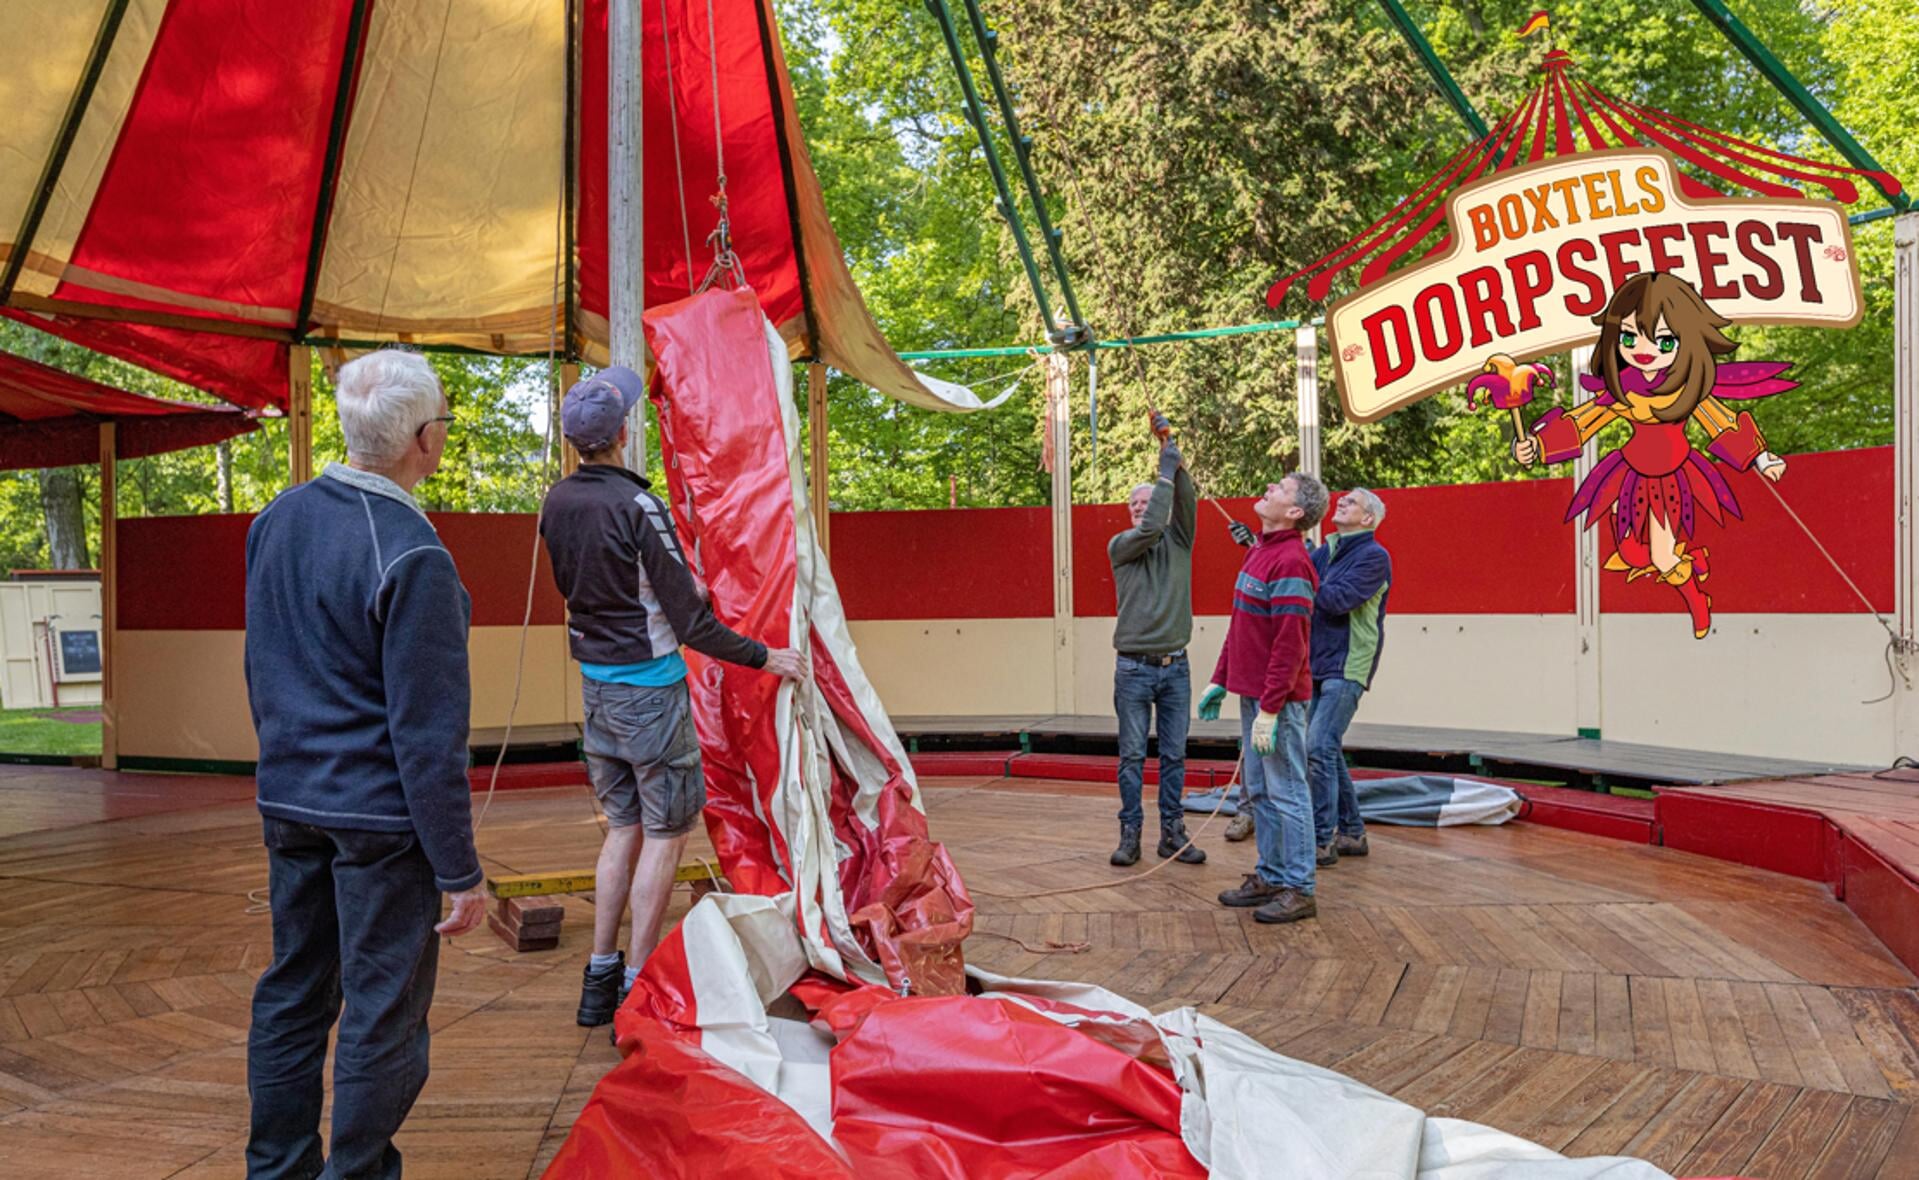 Opbouw van spiegeltent Bon Salon in kasteelpark Stapelen. Hier wordt vanaf 26 mei vier weken lang het Boxtels Dorpsfeest gehouden.